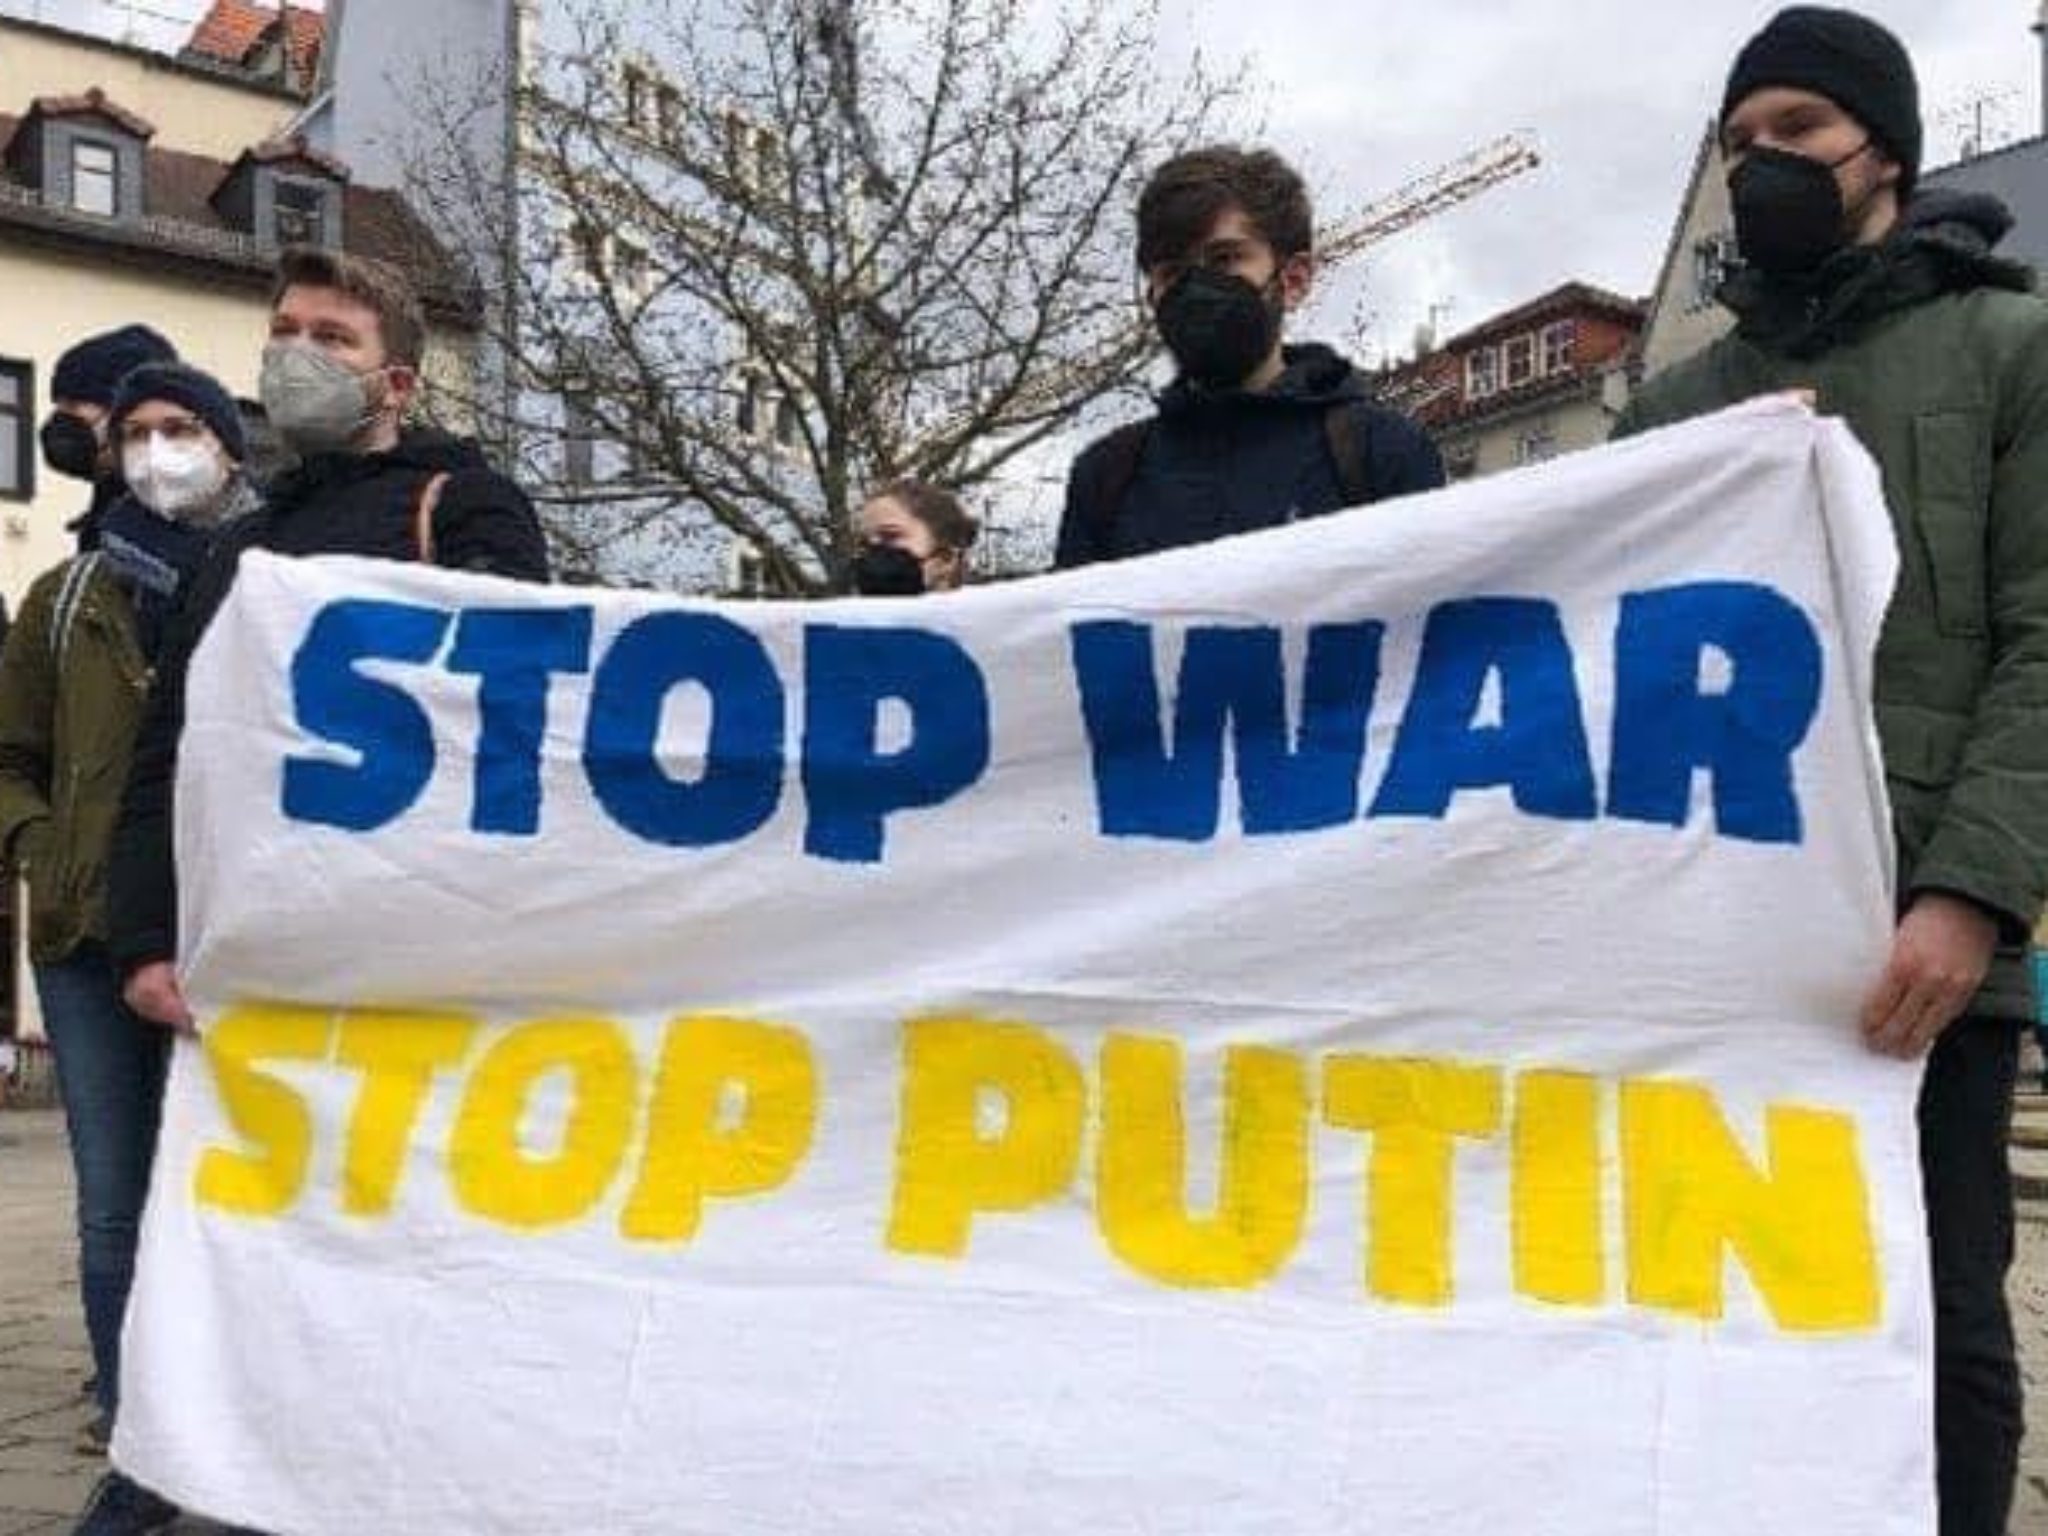 Stop War! Stop Putin!